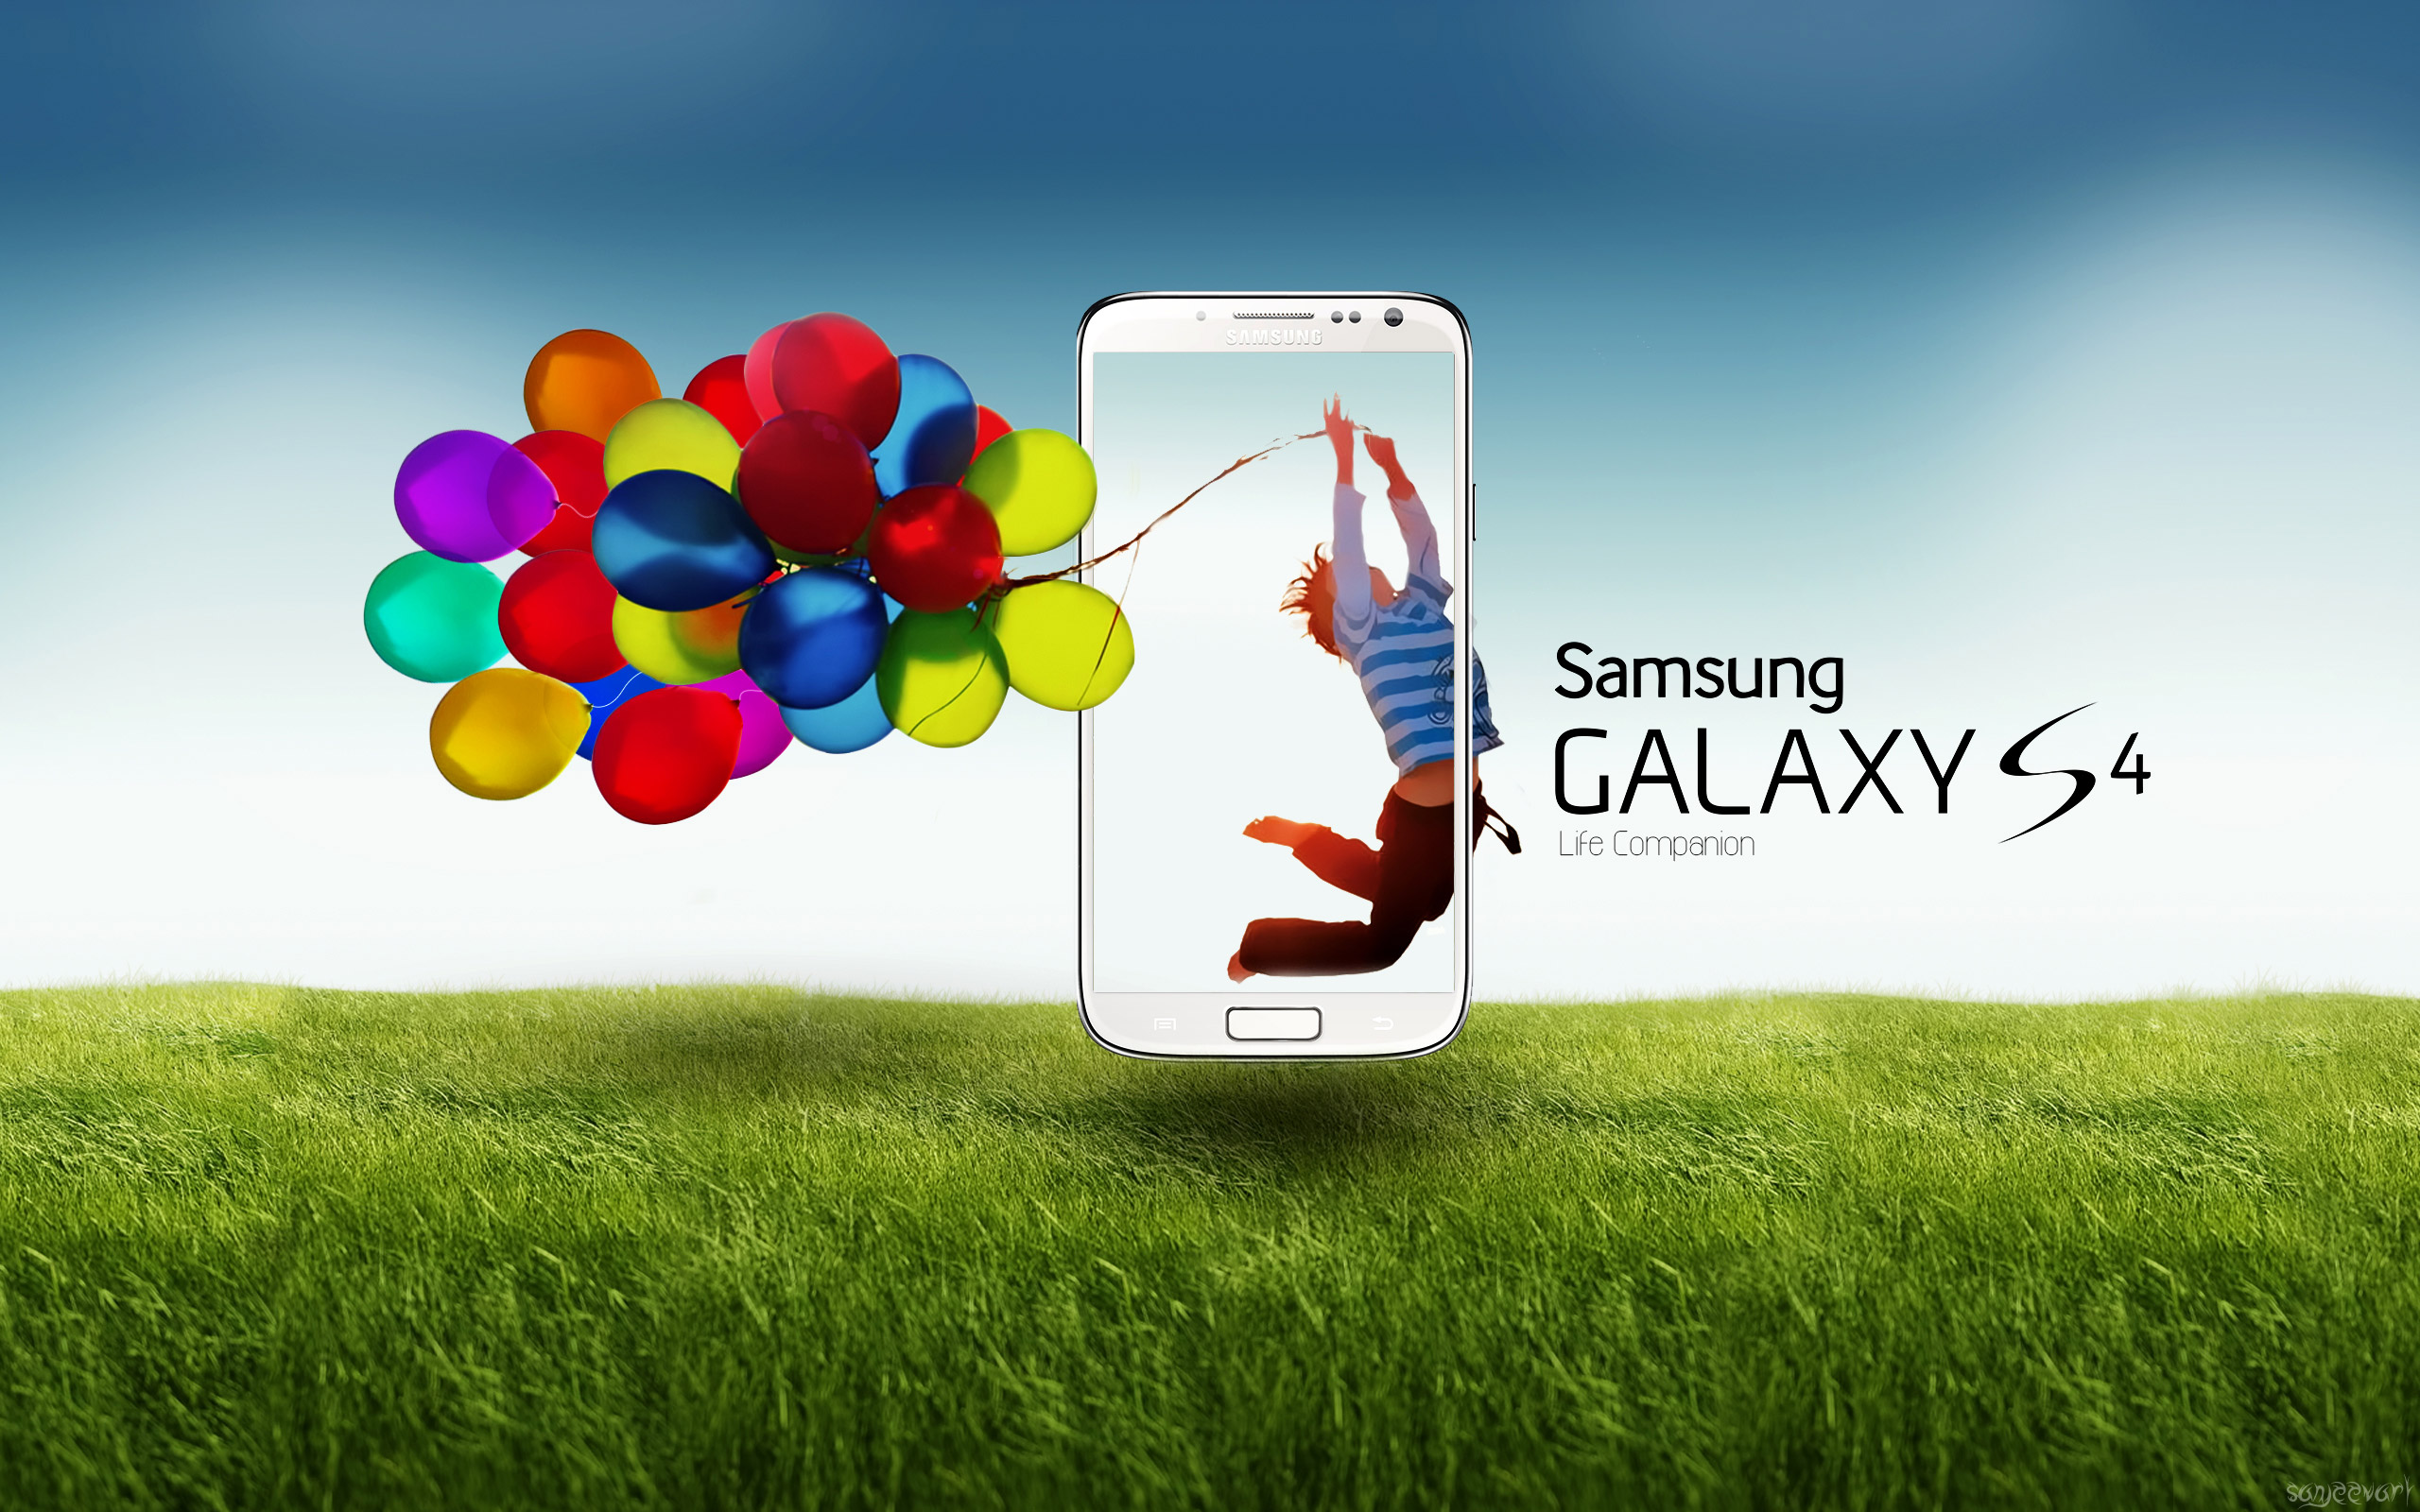 Обои на рабочий экран андроид. Самсунг галакси с4. Самсунг галакси s4 реклама. Телефон Samsung Galaxy s4. Samsung s4 Max.